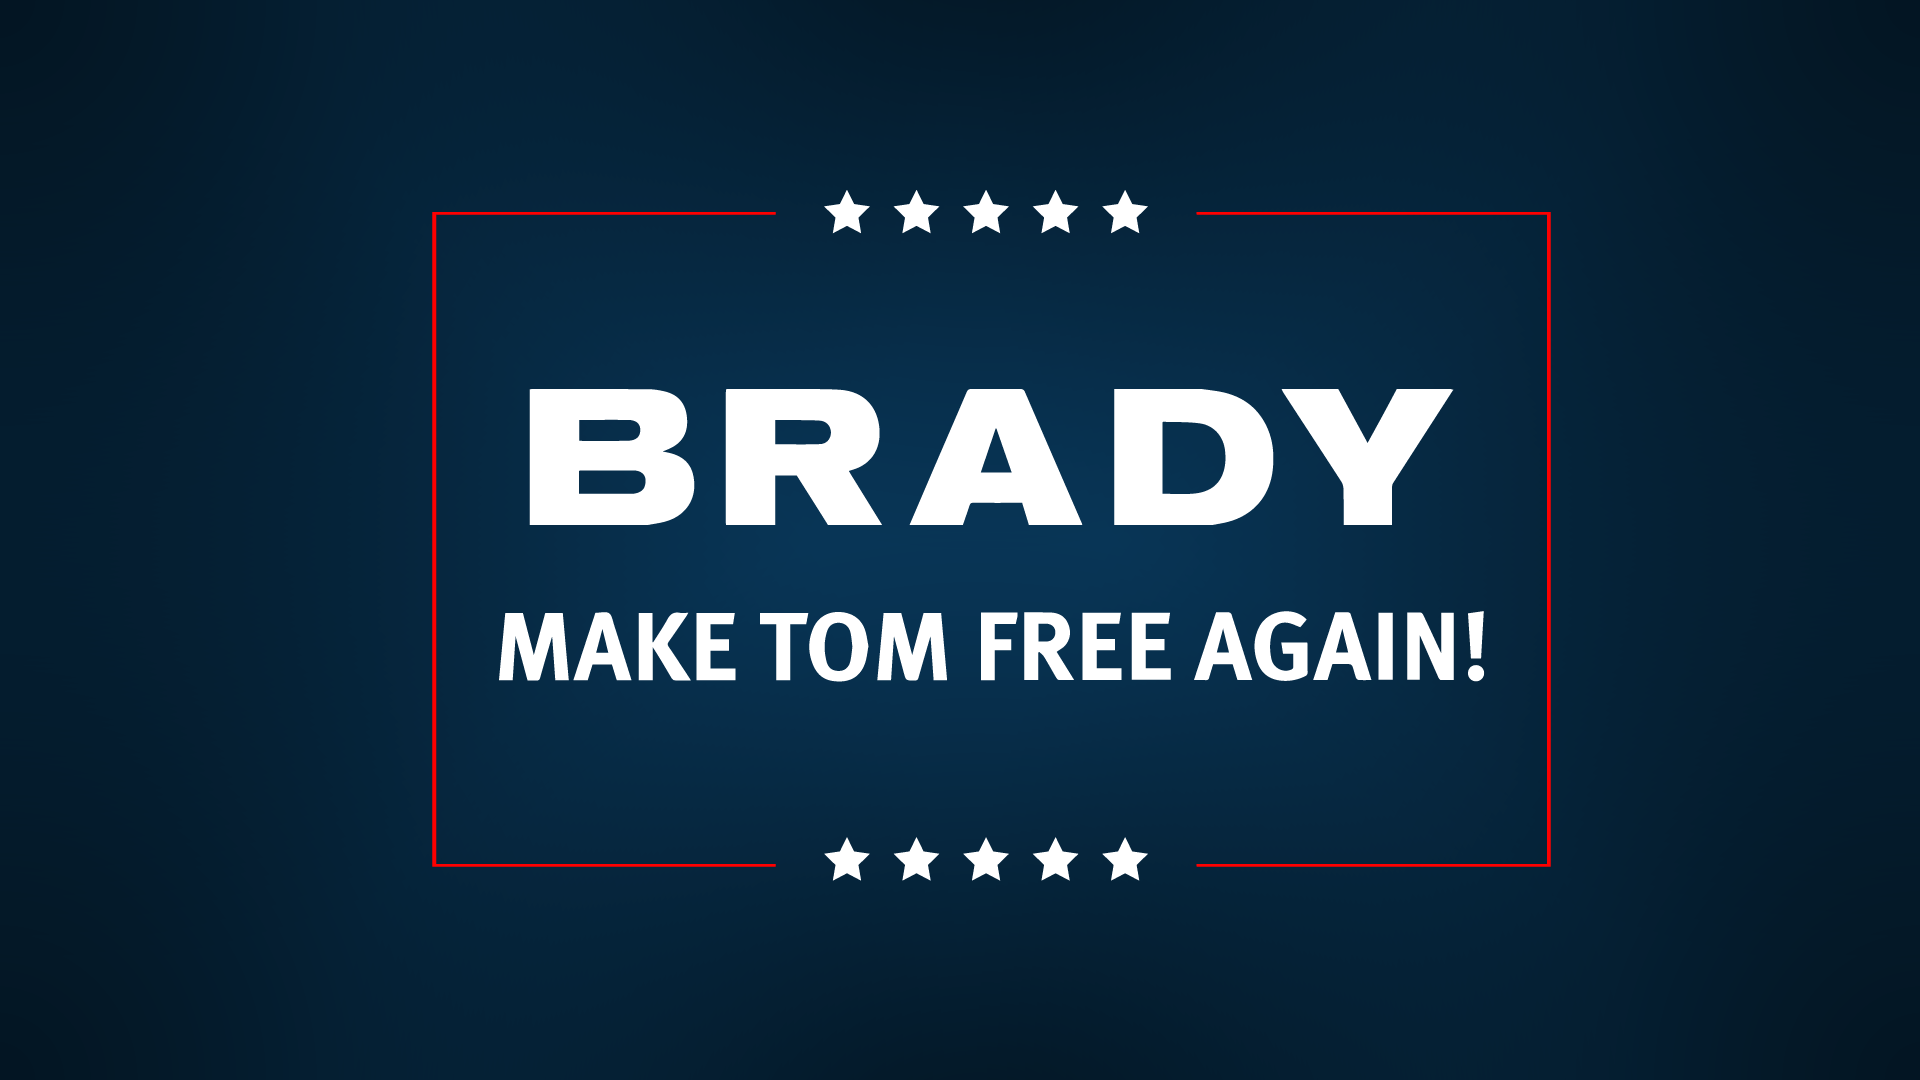 OC) Make Tom Brady Free Again wallpaper. [1920x1280]